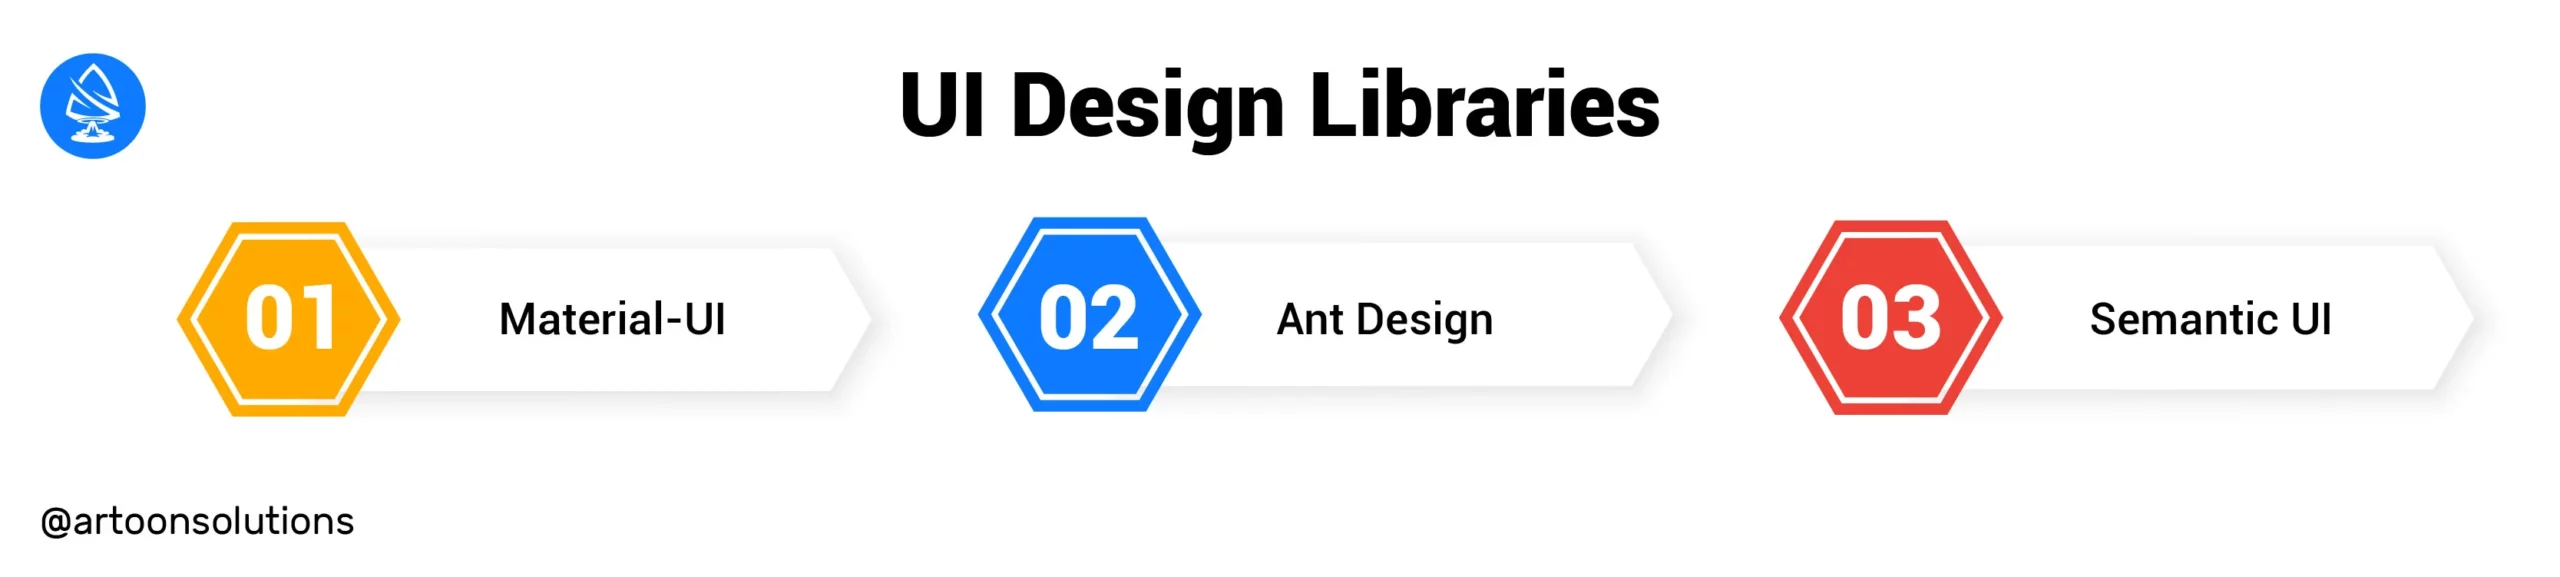 UI Design Libraries